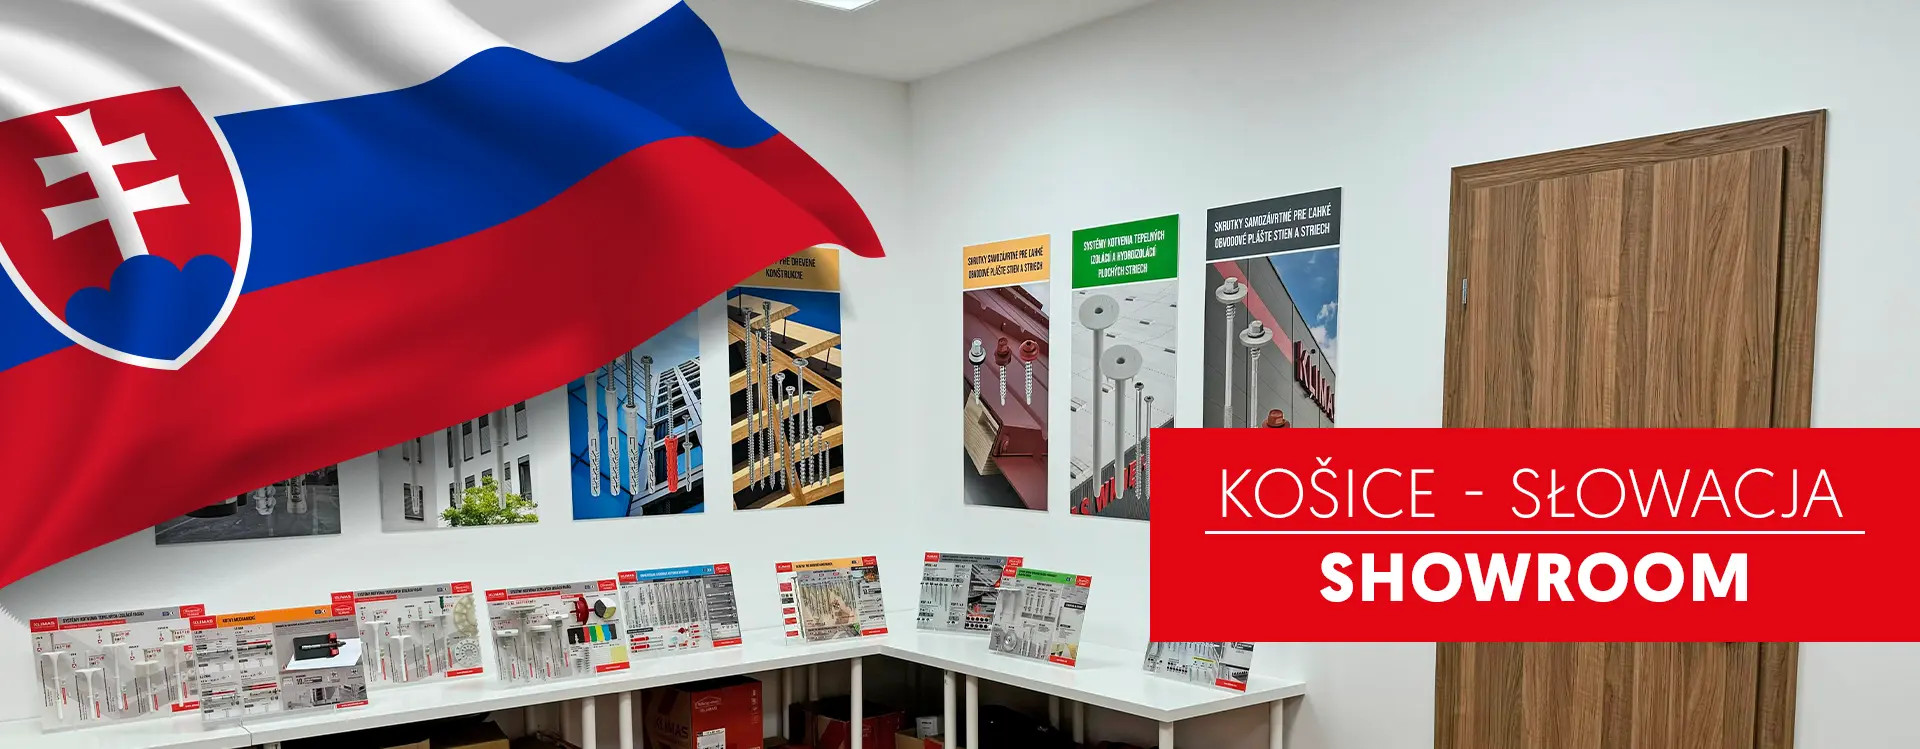 Nowy showroom marki na Słowacji